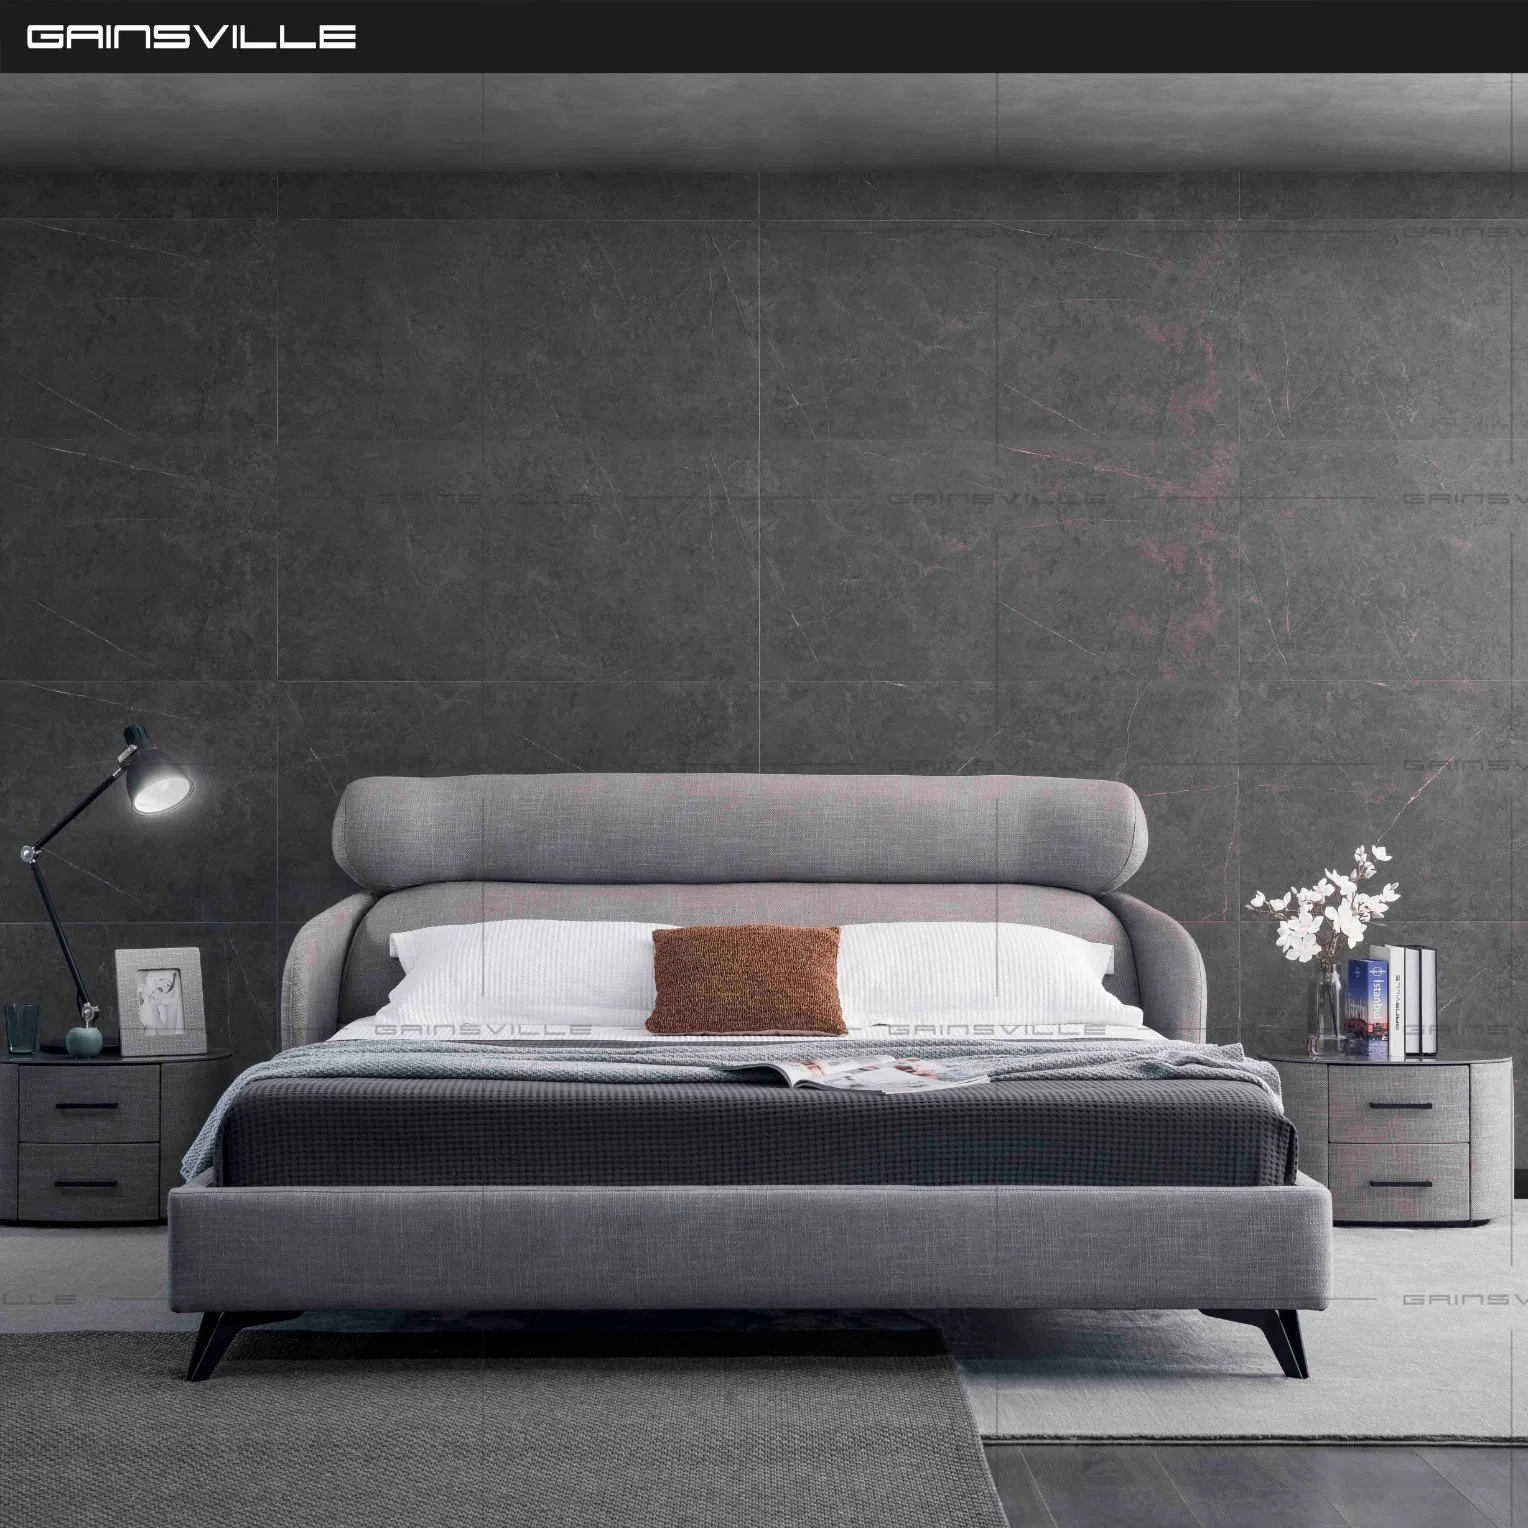 Modern Bedroom Furniture Beds Velvet Living Room Bed Storge Bed Adult Bed Furniture Wall Bed Sofa Furniture